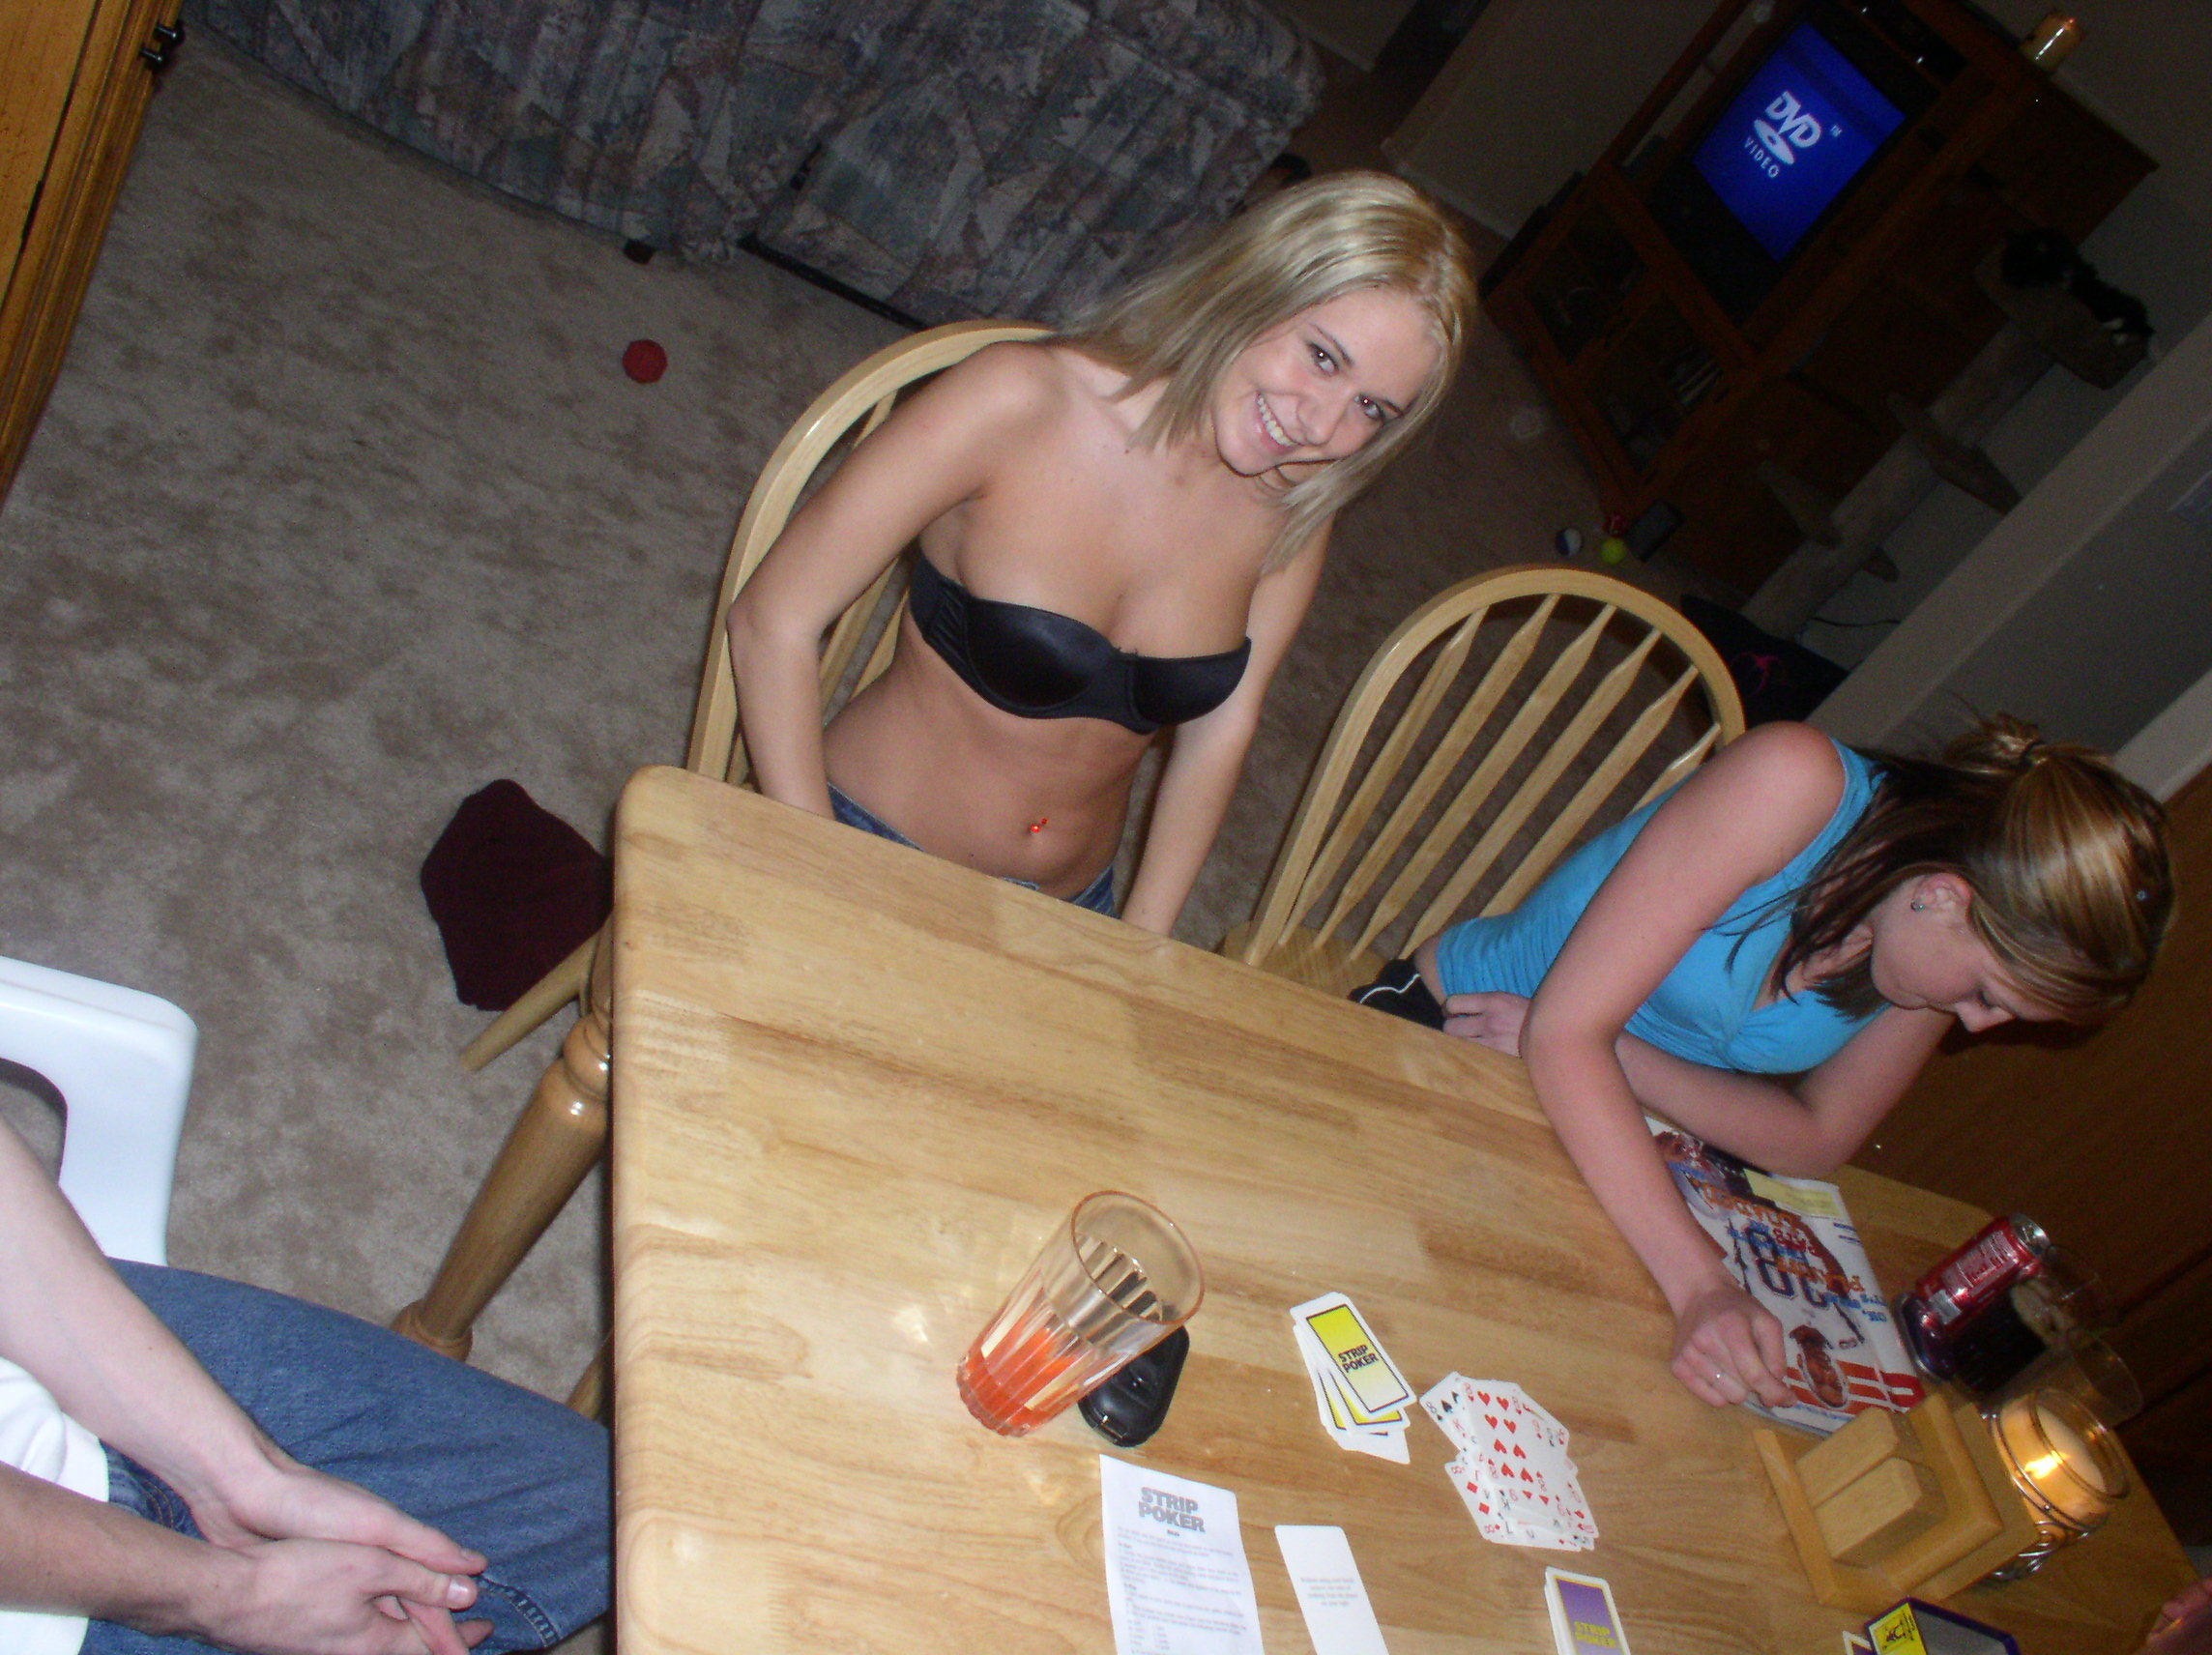 Drunk Strip Teens - Strip Poker, Drunk Girls, Body Shot Two College Coeds